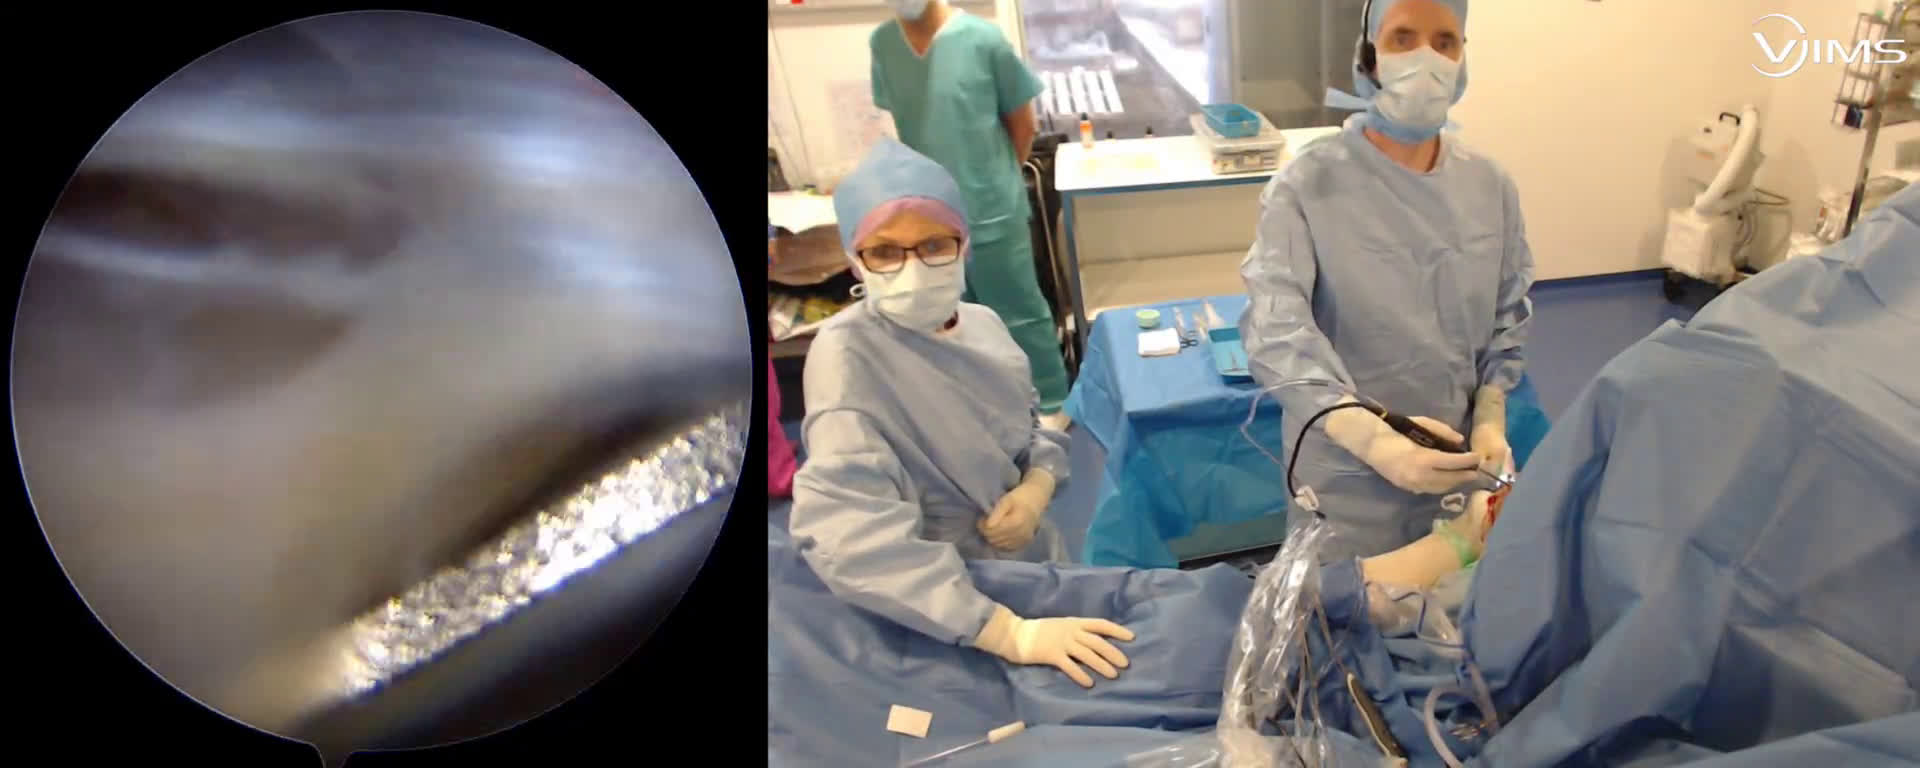 Réparation arthroscopique d'une rupture de la coiffe des rotateur de l'épaule par suture double rang type « speed bridge » (Dr. Joudet)